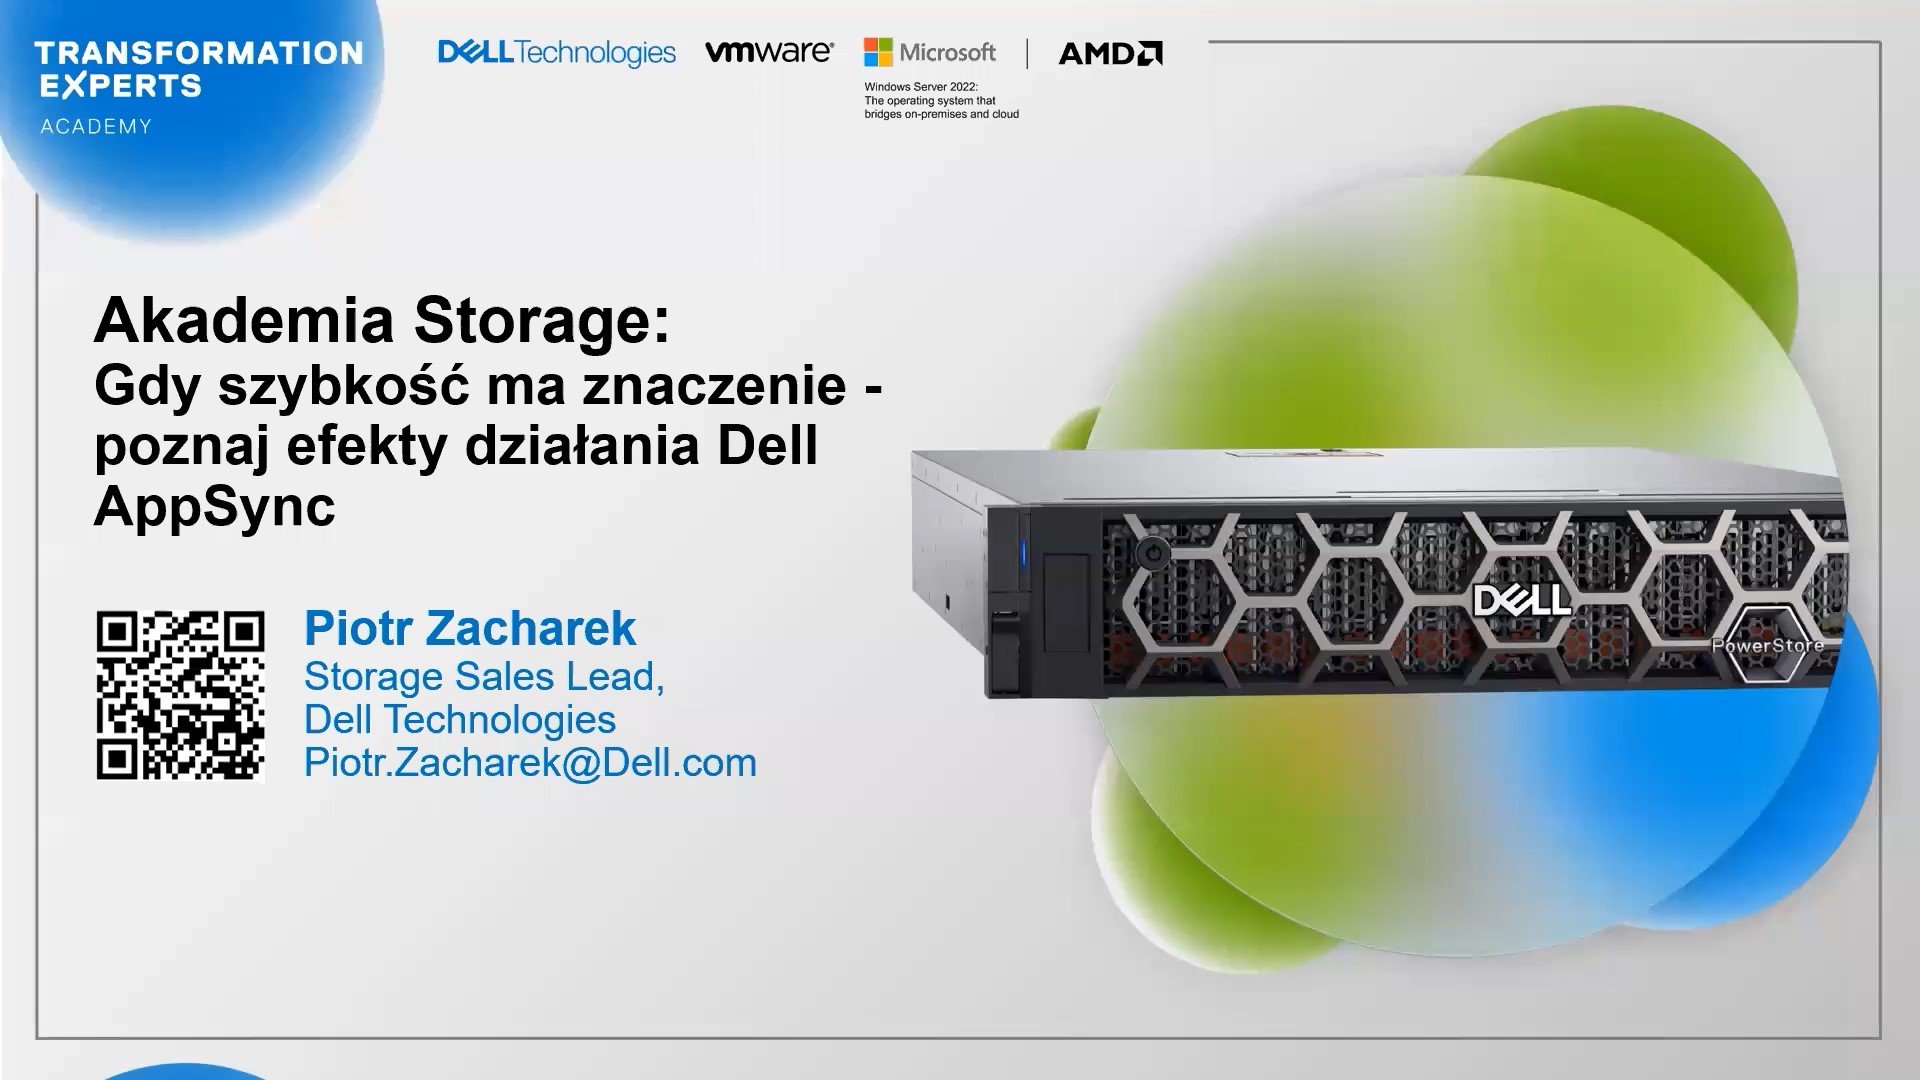 Akademia Storage: Gdy szybkość ma znaczenie – poznaj efekty połączenia PowerStore i Dell AppSync